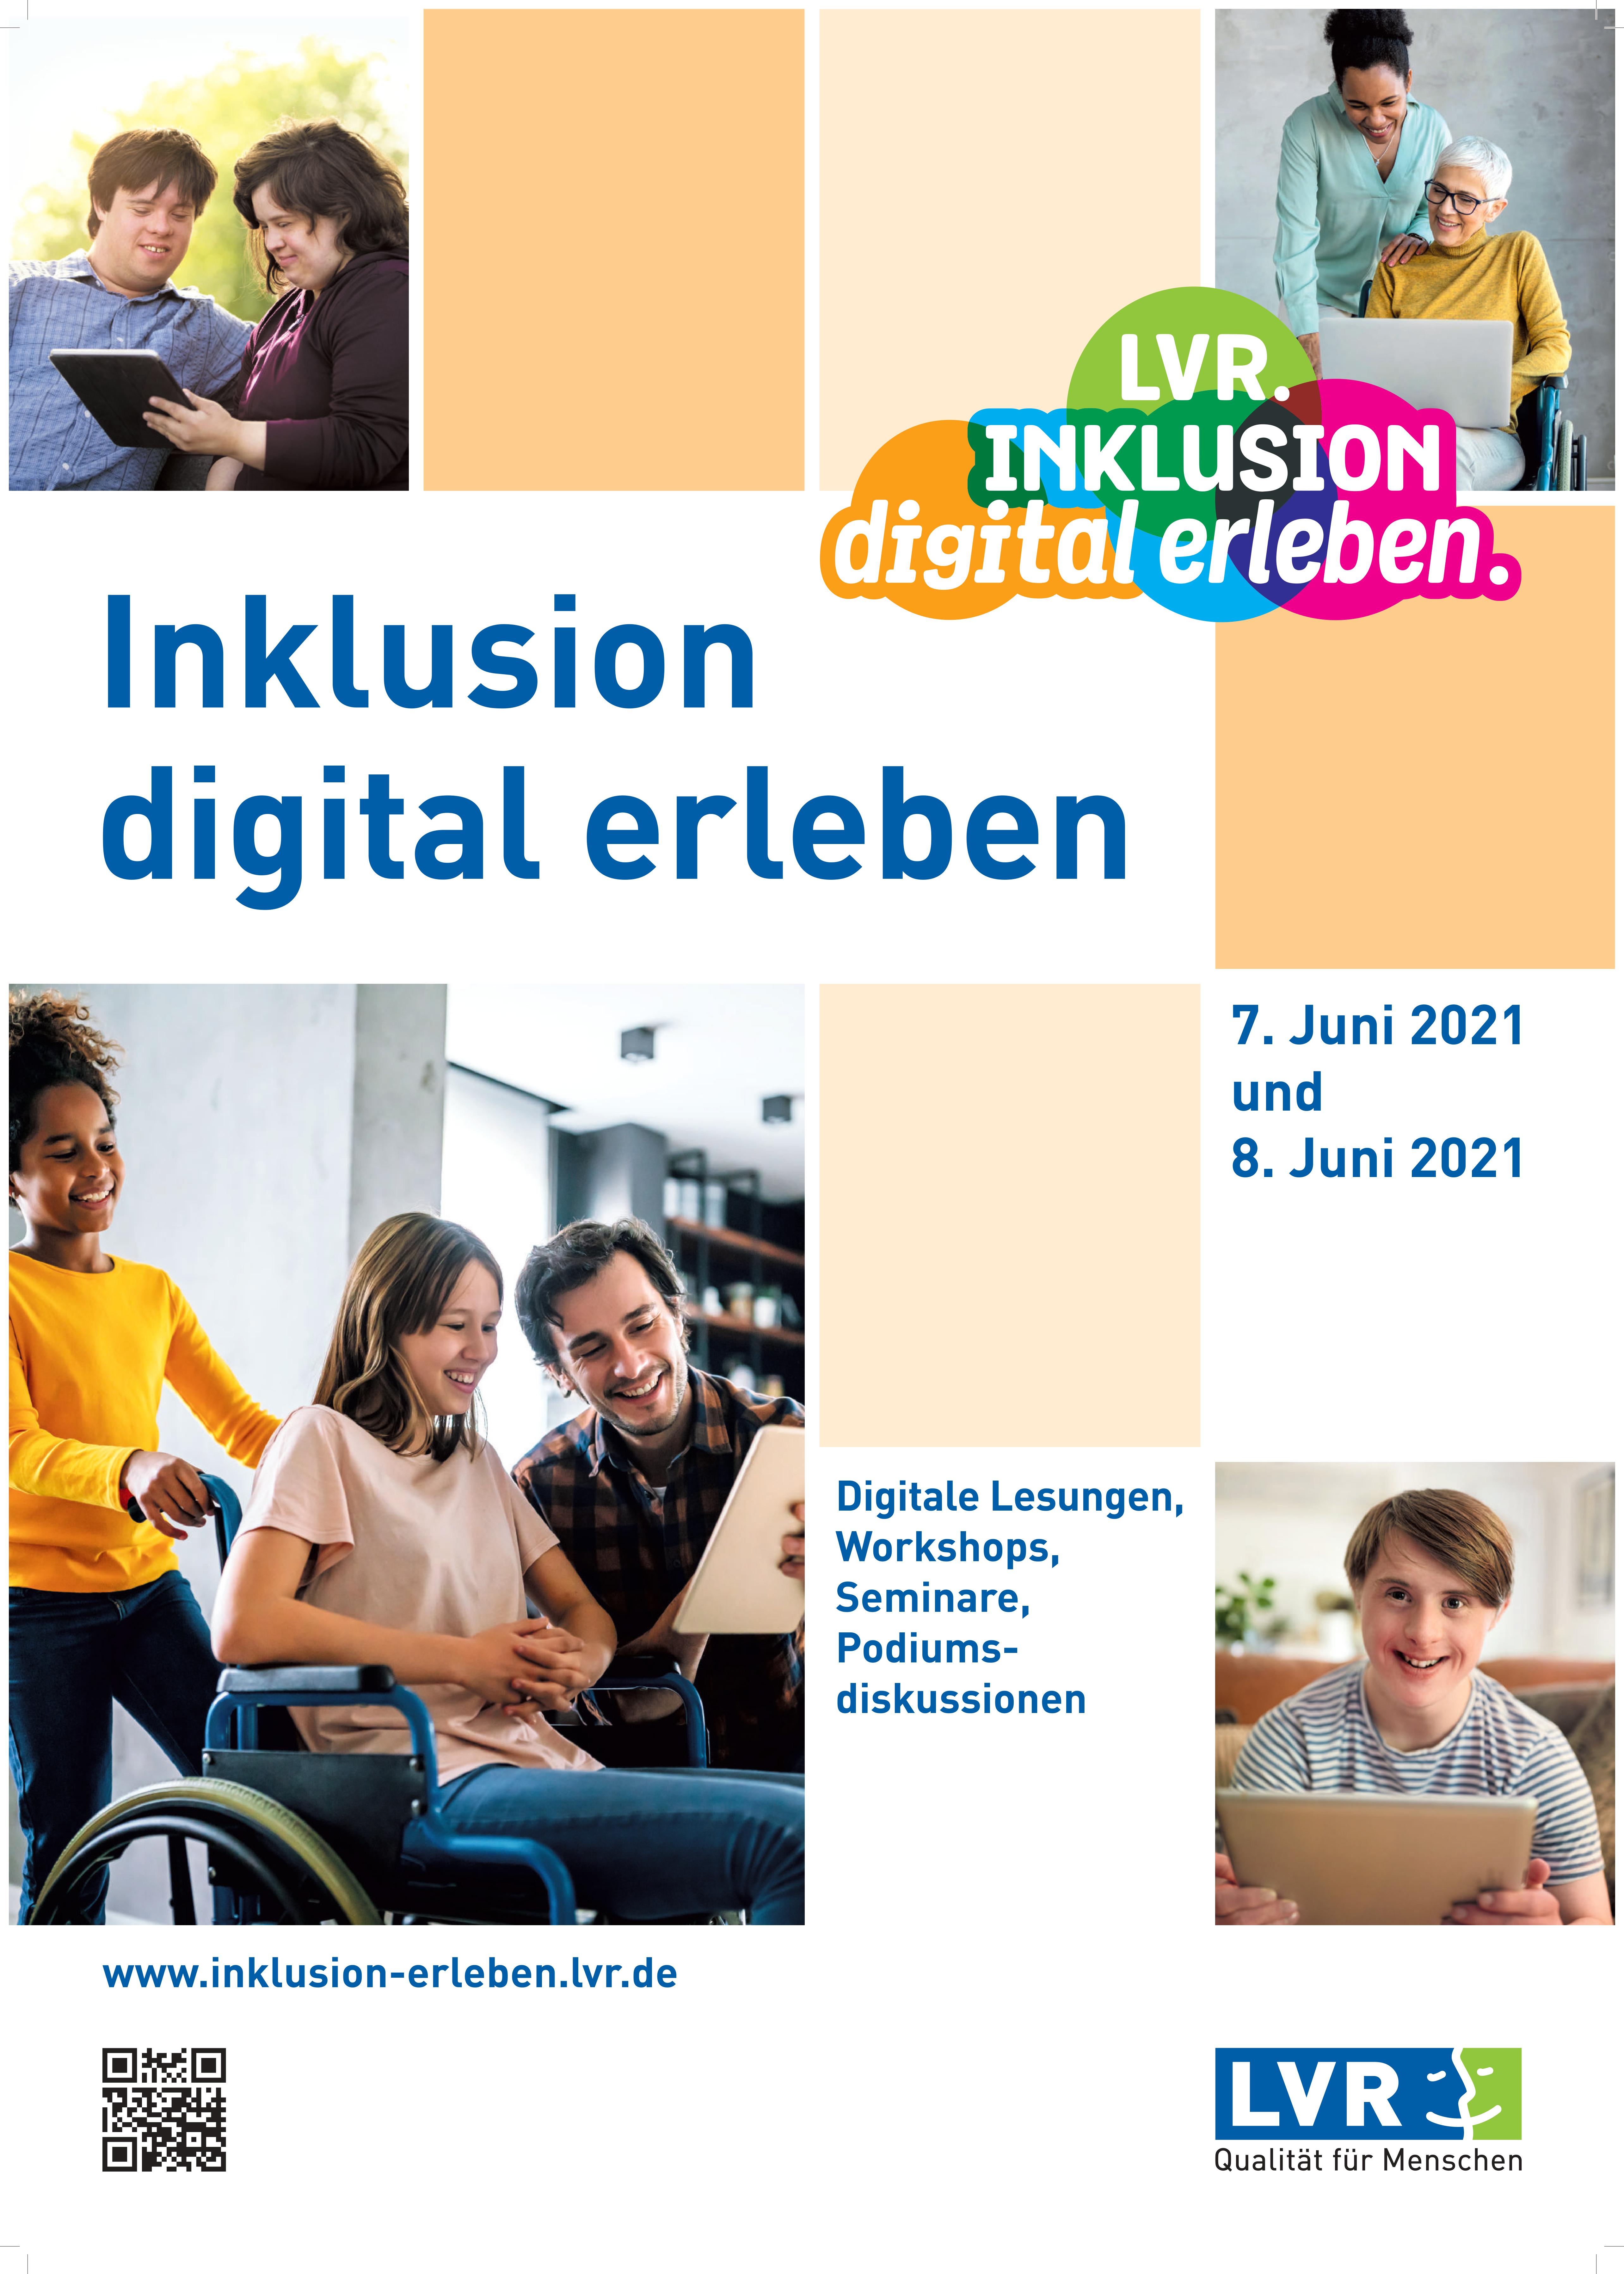 Ein Plakat der Veranstaltung "Inklusion digital erleben". Es sind mehrere Bildern von Menschen mit Behinderung abgebildet. 